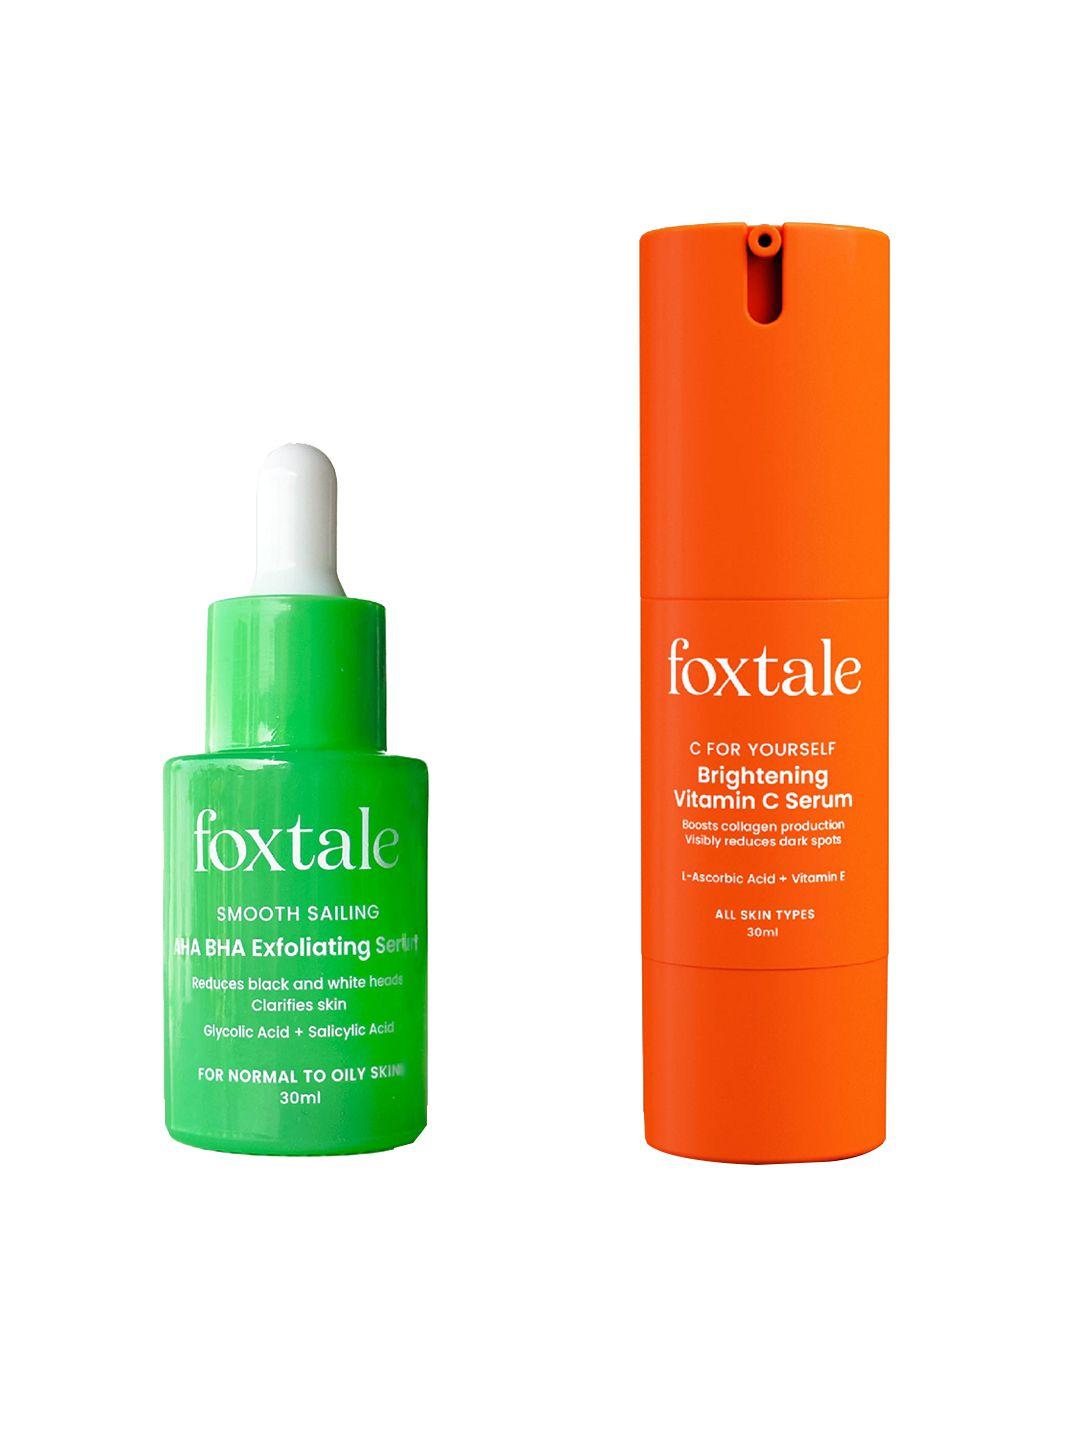 foxtale smooth sailing aha bha exfoliating & vitamin c face serum-30ml each